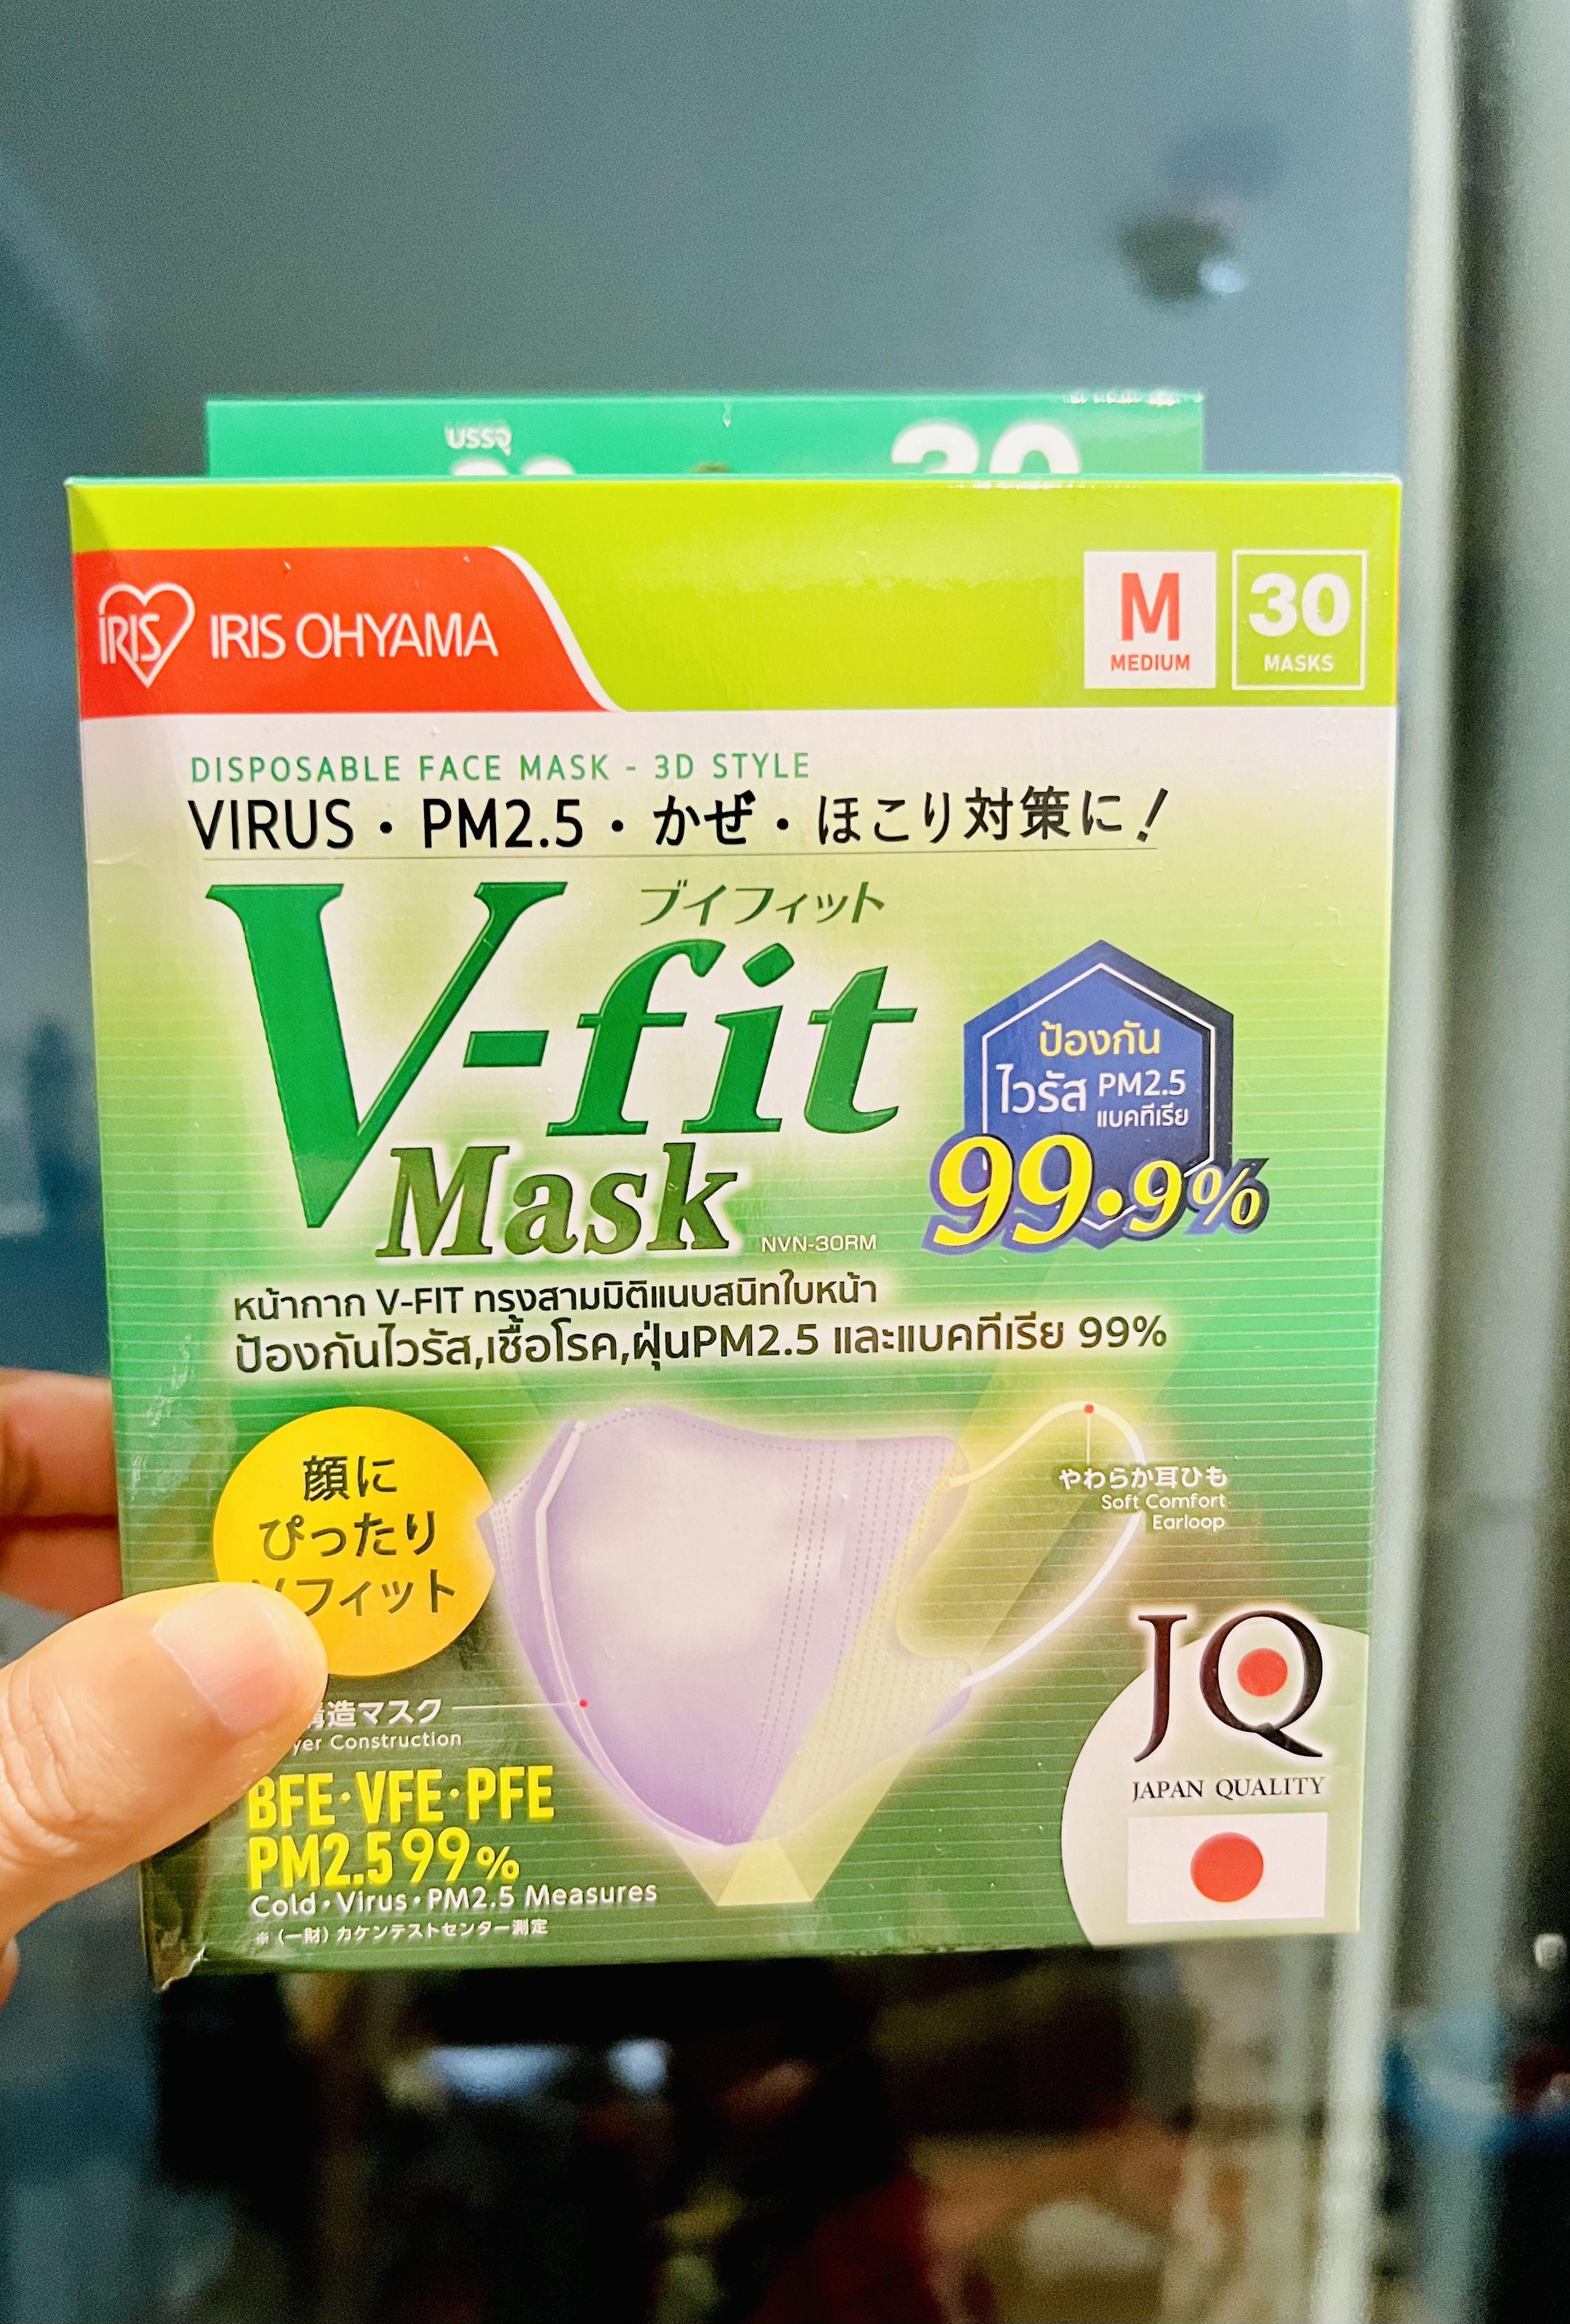 ภาพหน้าปก V-fit mask แมสหน้าเรียวสวย หายใจสะดวก ที่:0